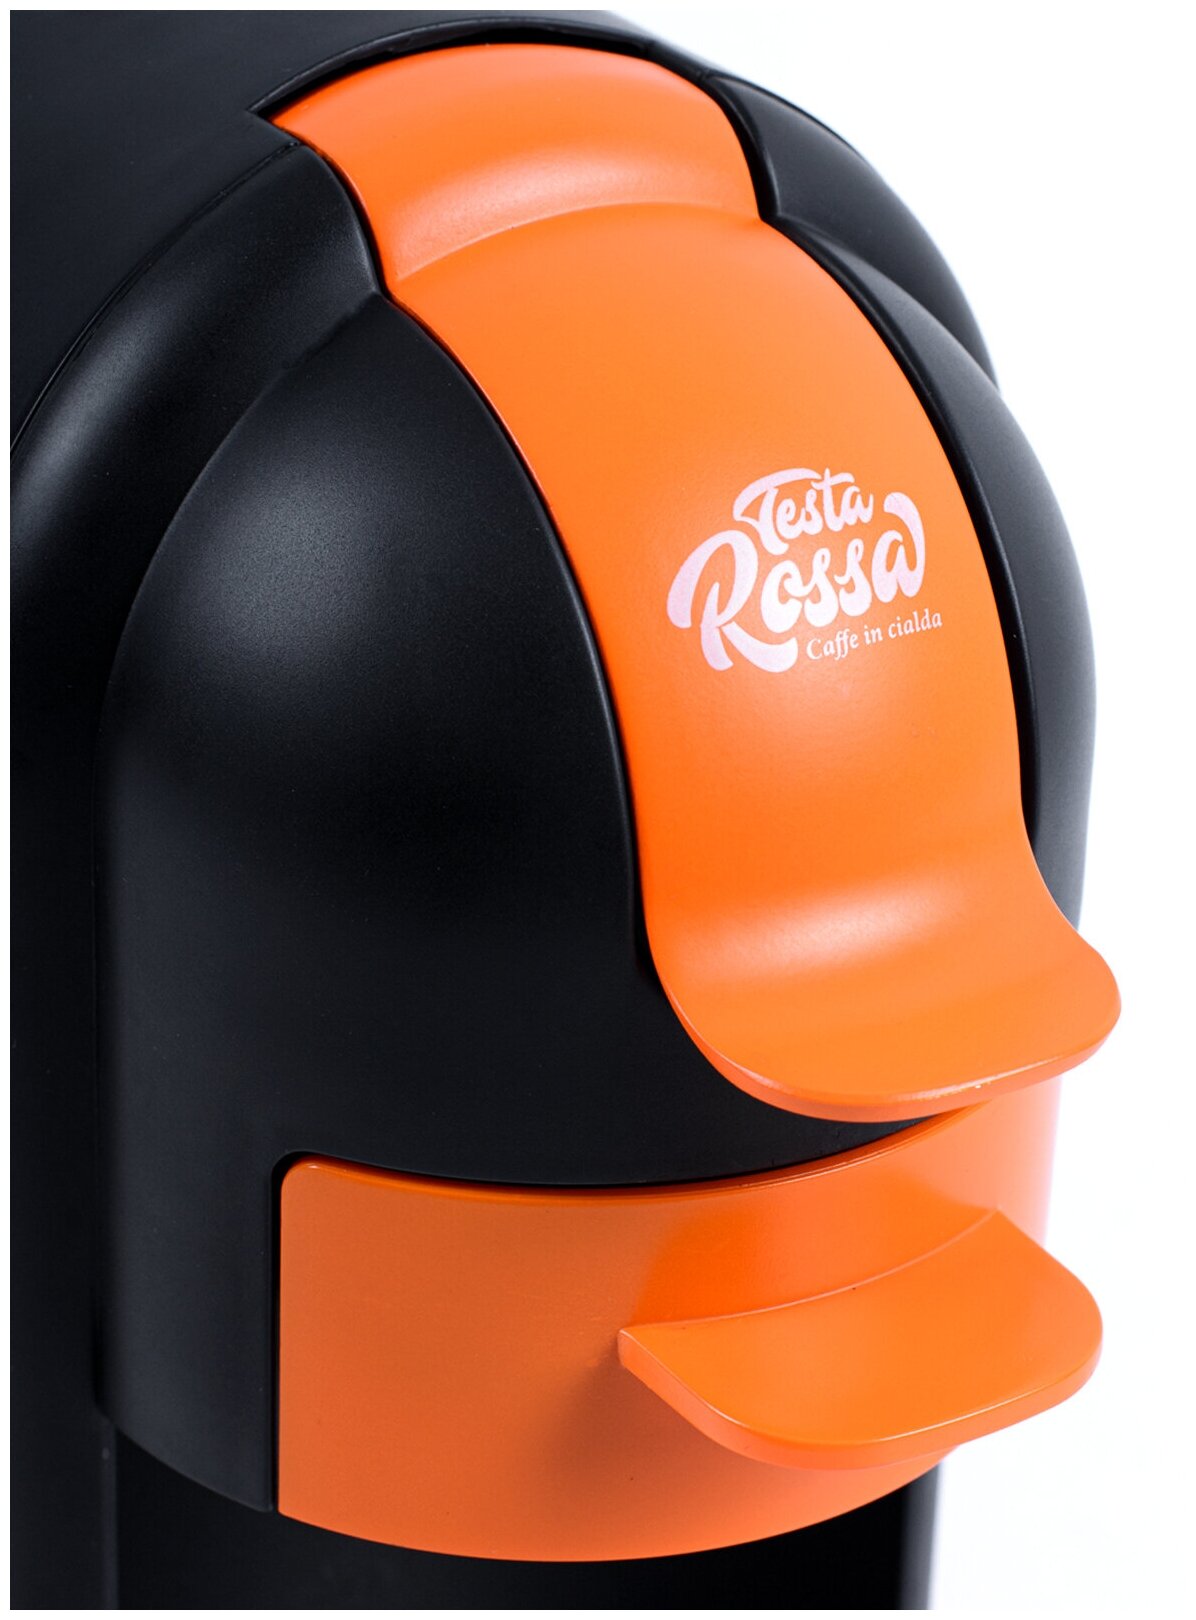 Кофеварка чалдовая Testa Rossa model 6890, 0,6 л, 1350 Вт, чалды 70 мм, оранжевый/черный - фотография № 6